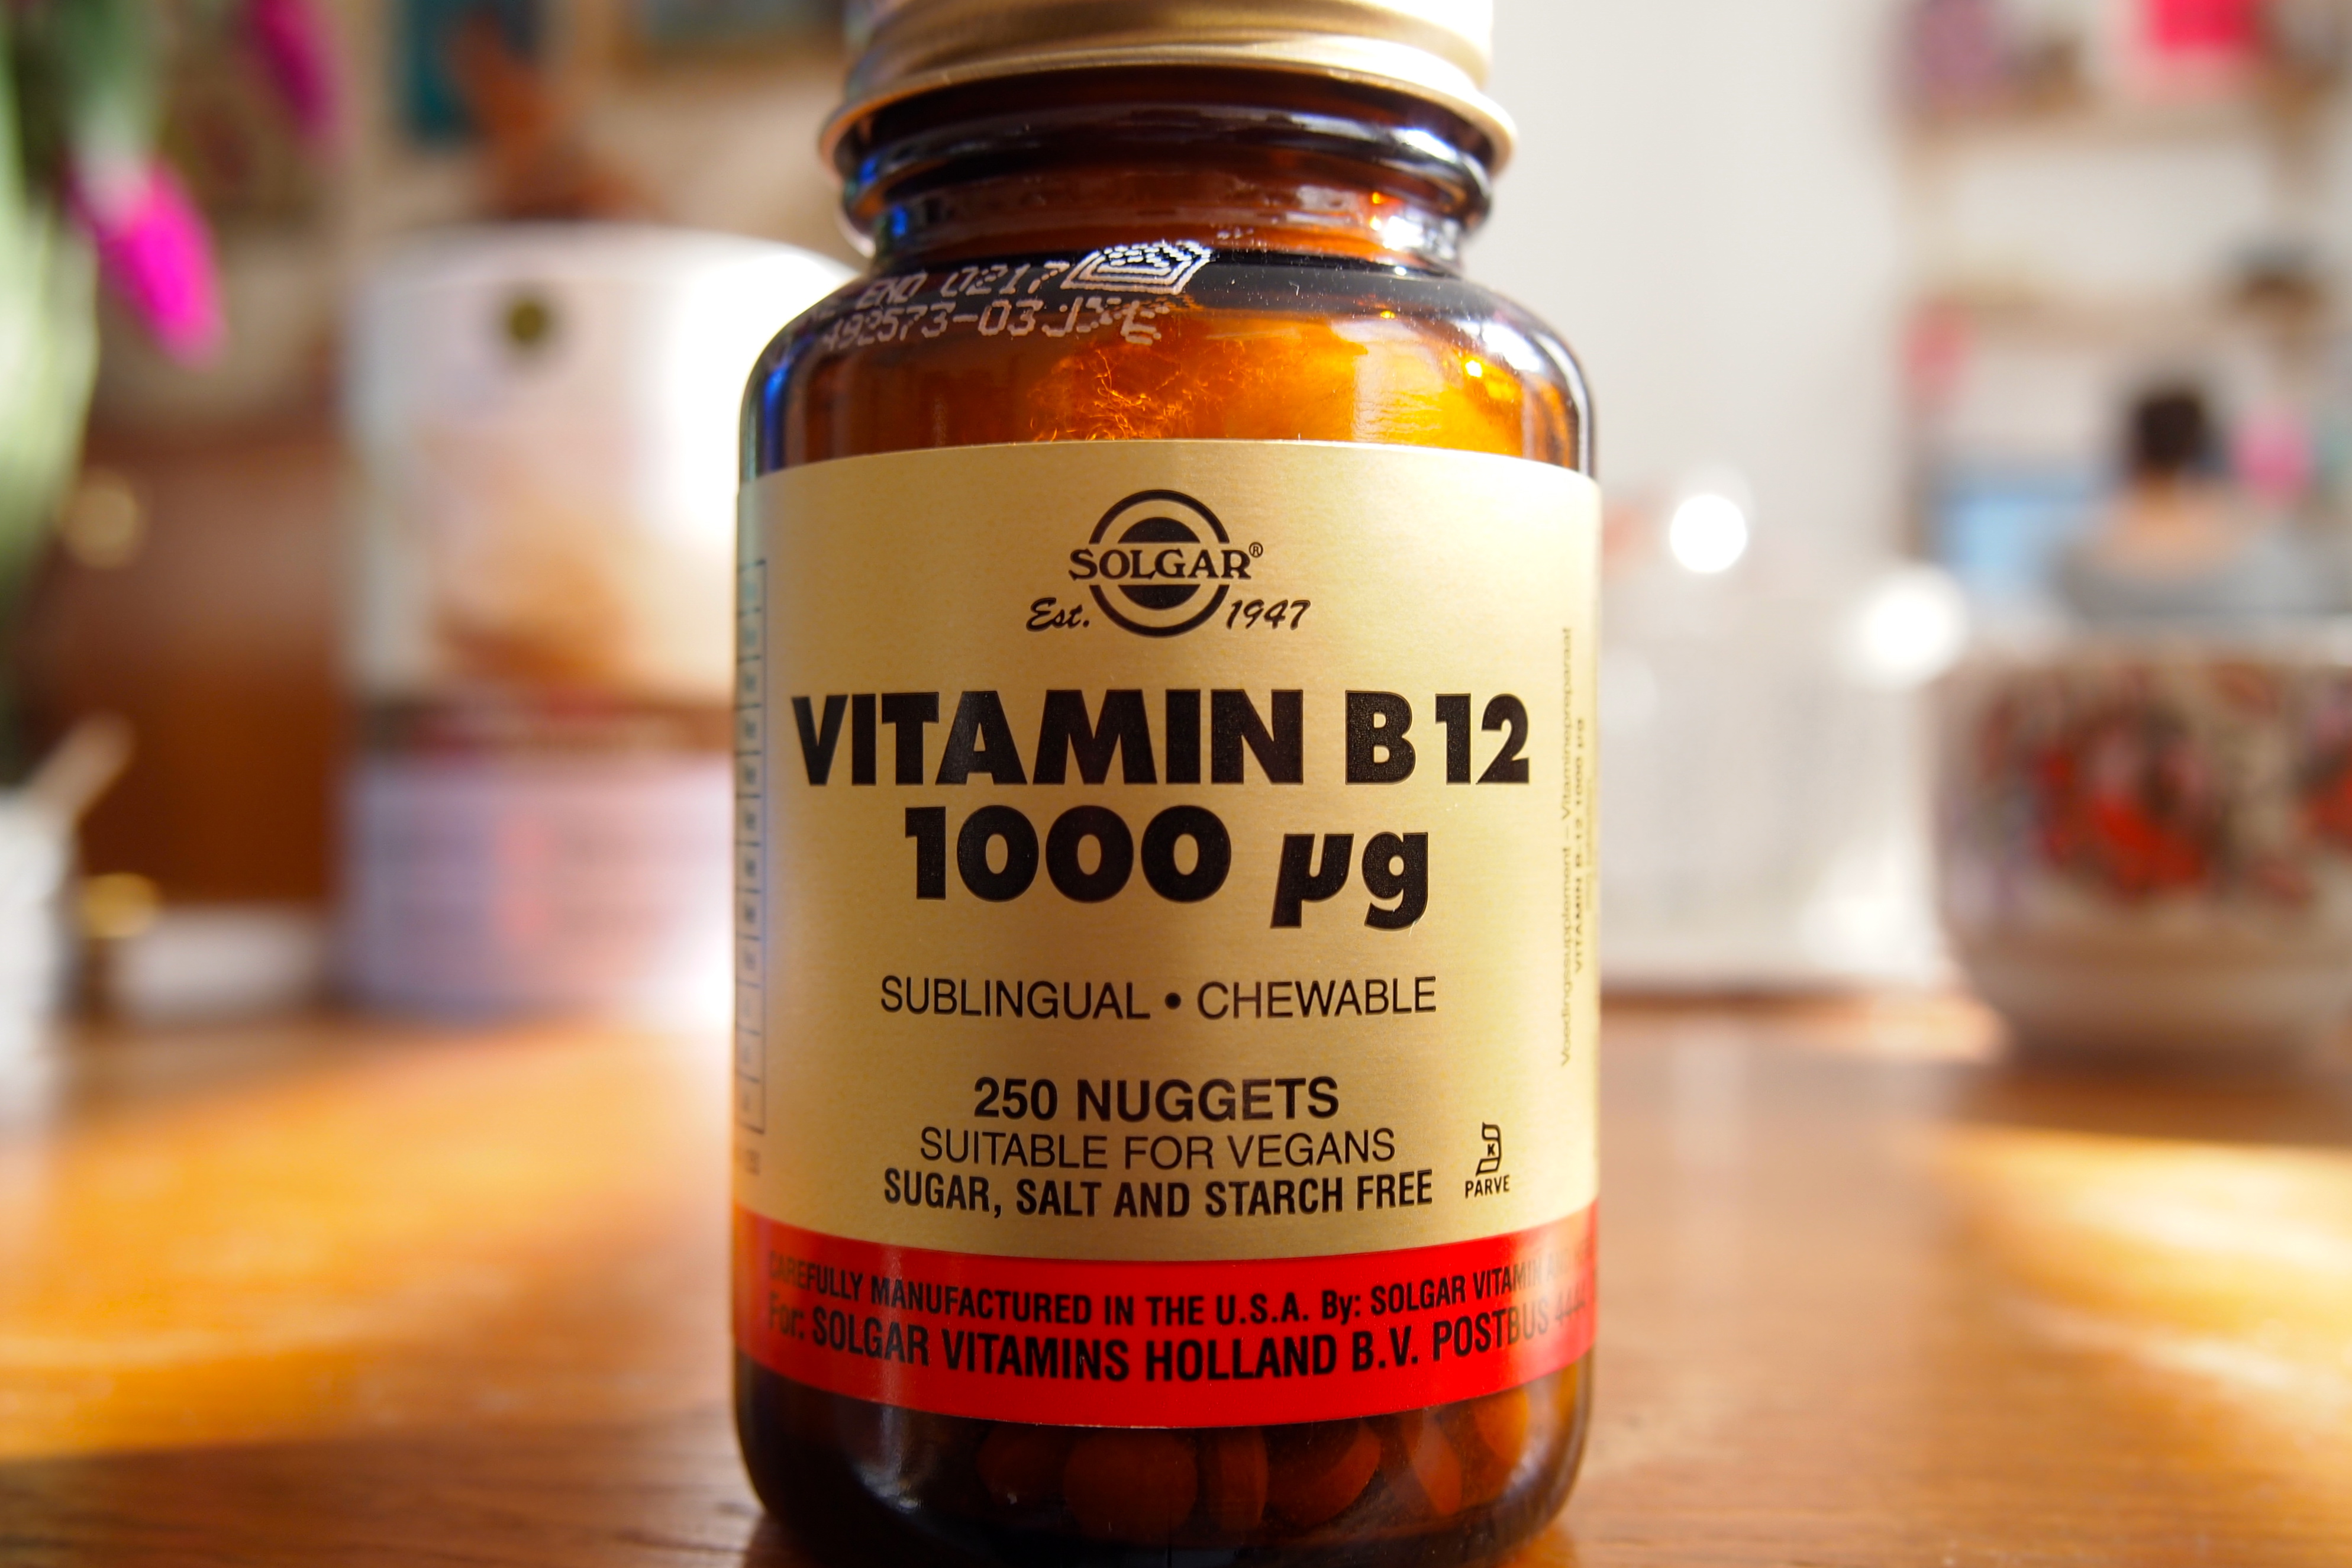 afbetalen Vol sensatie Vitamine B12 | De Groene Meisjes